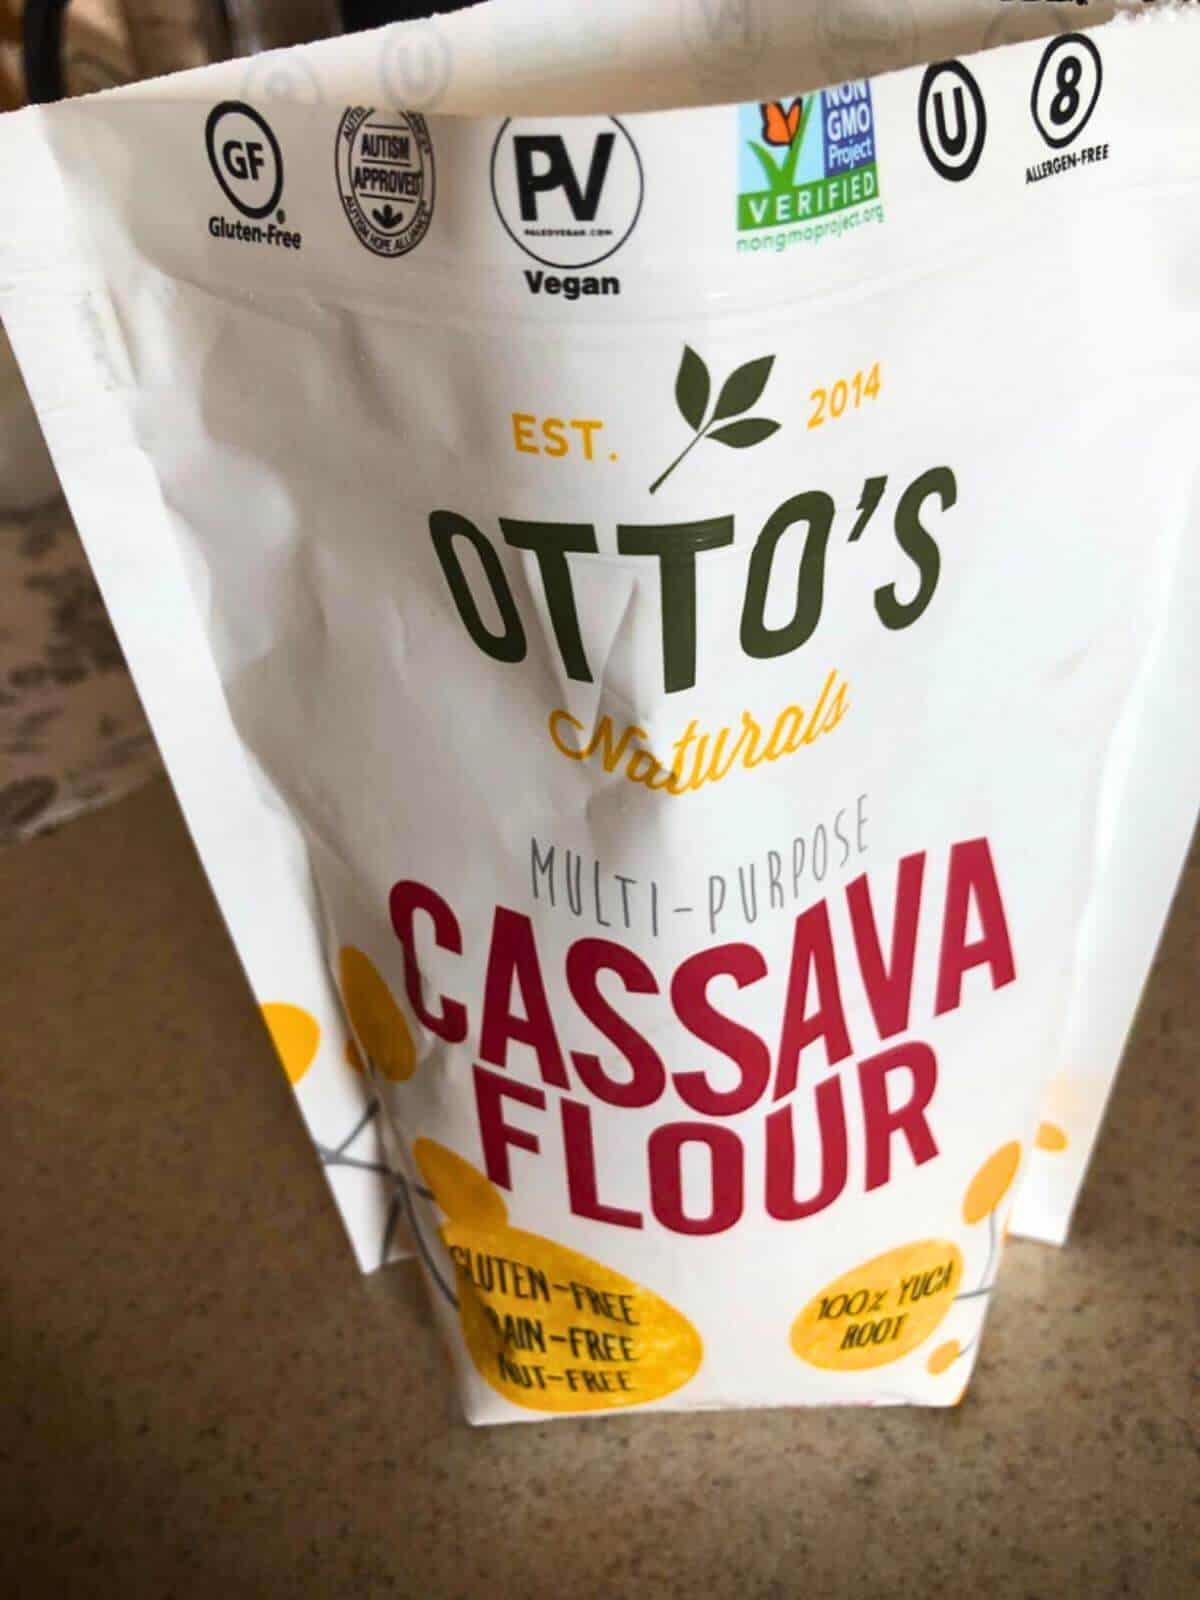 A bag of ottos cassave flour.